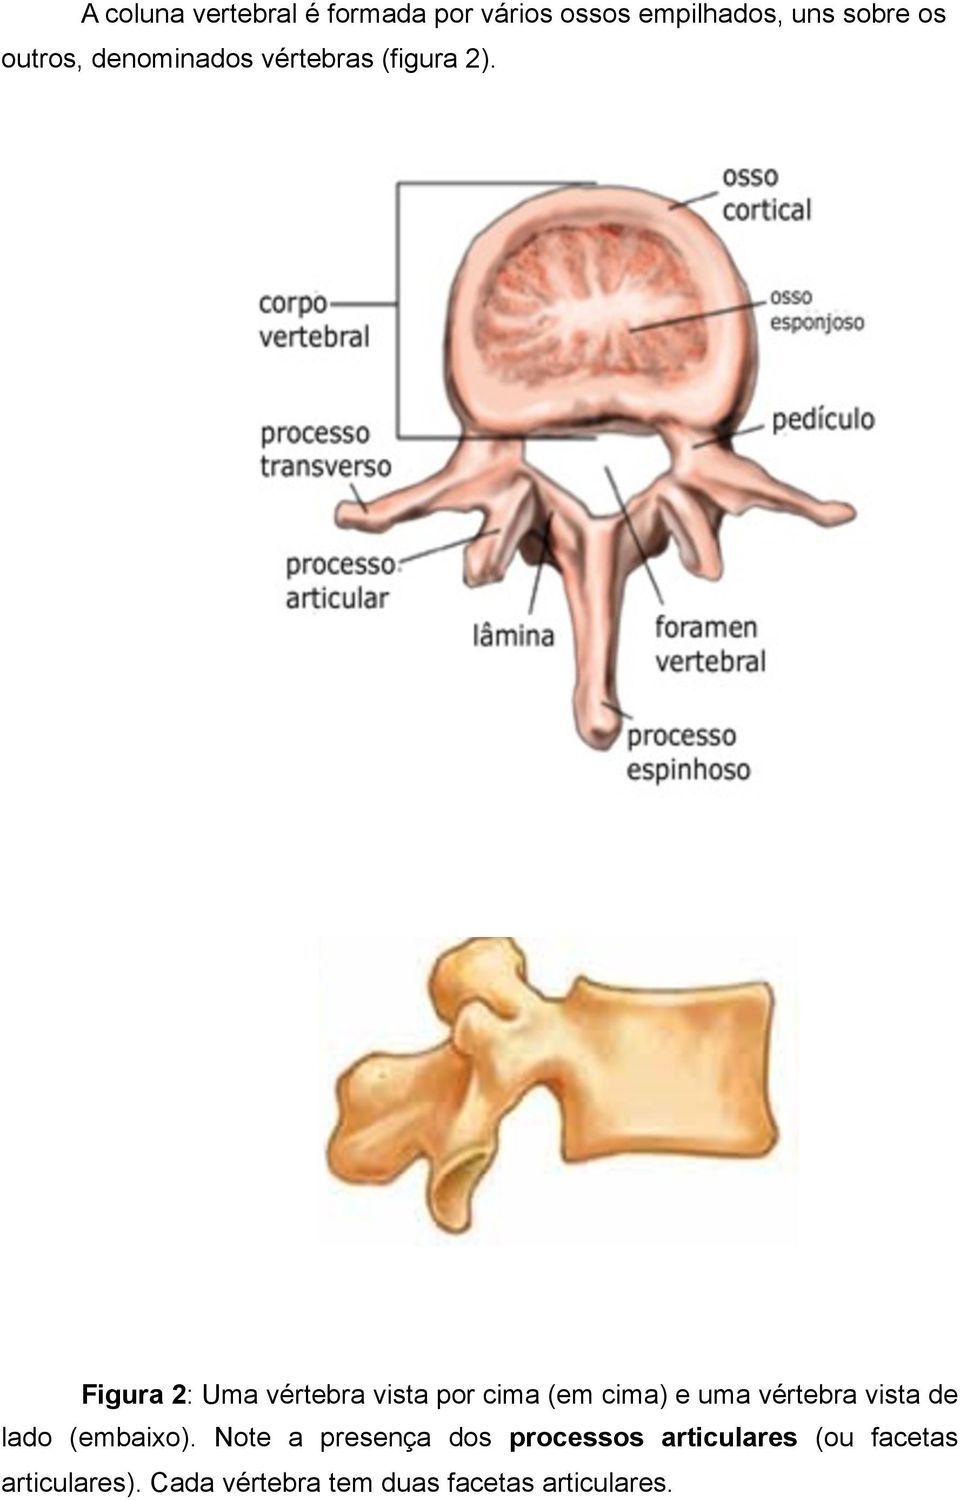 Figura 2: Uma vértebra vista por cima (em cima) e uma vértebra vista de lado